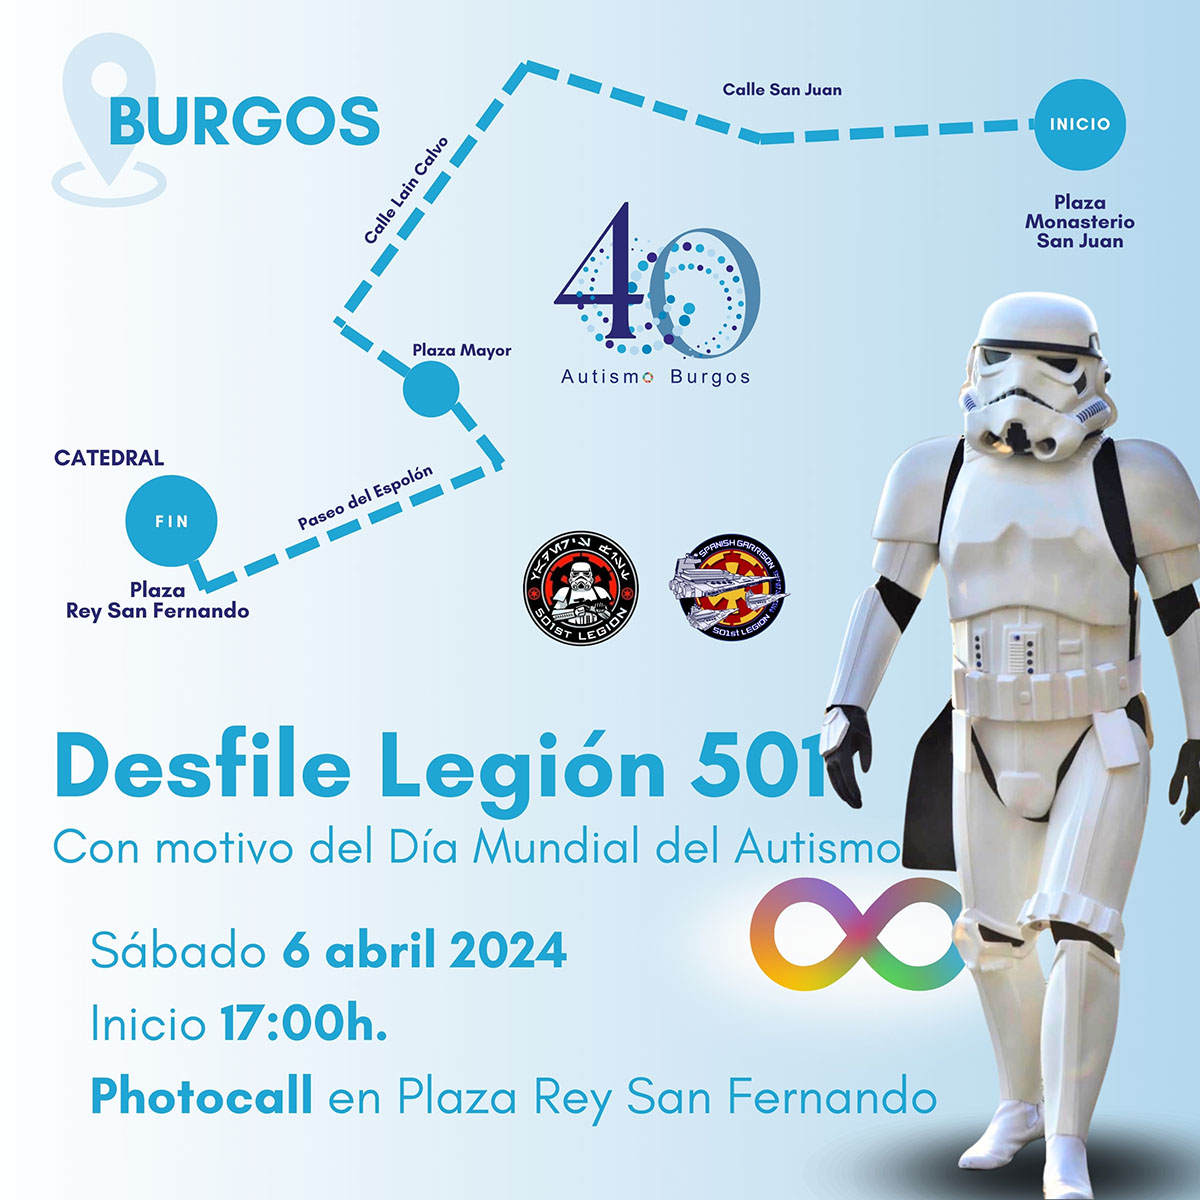 Desfile Legión 501 - Dia Mundial Autismo 2024 en Burgos